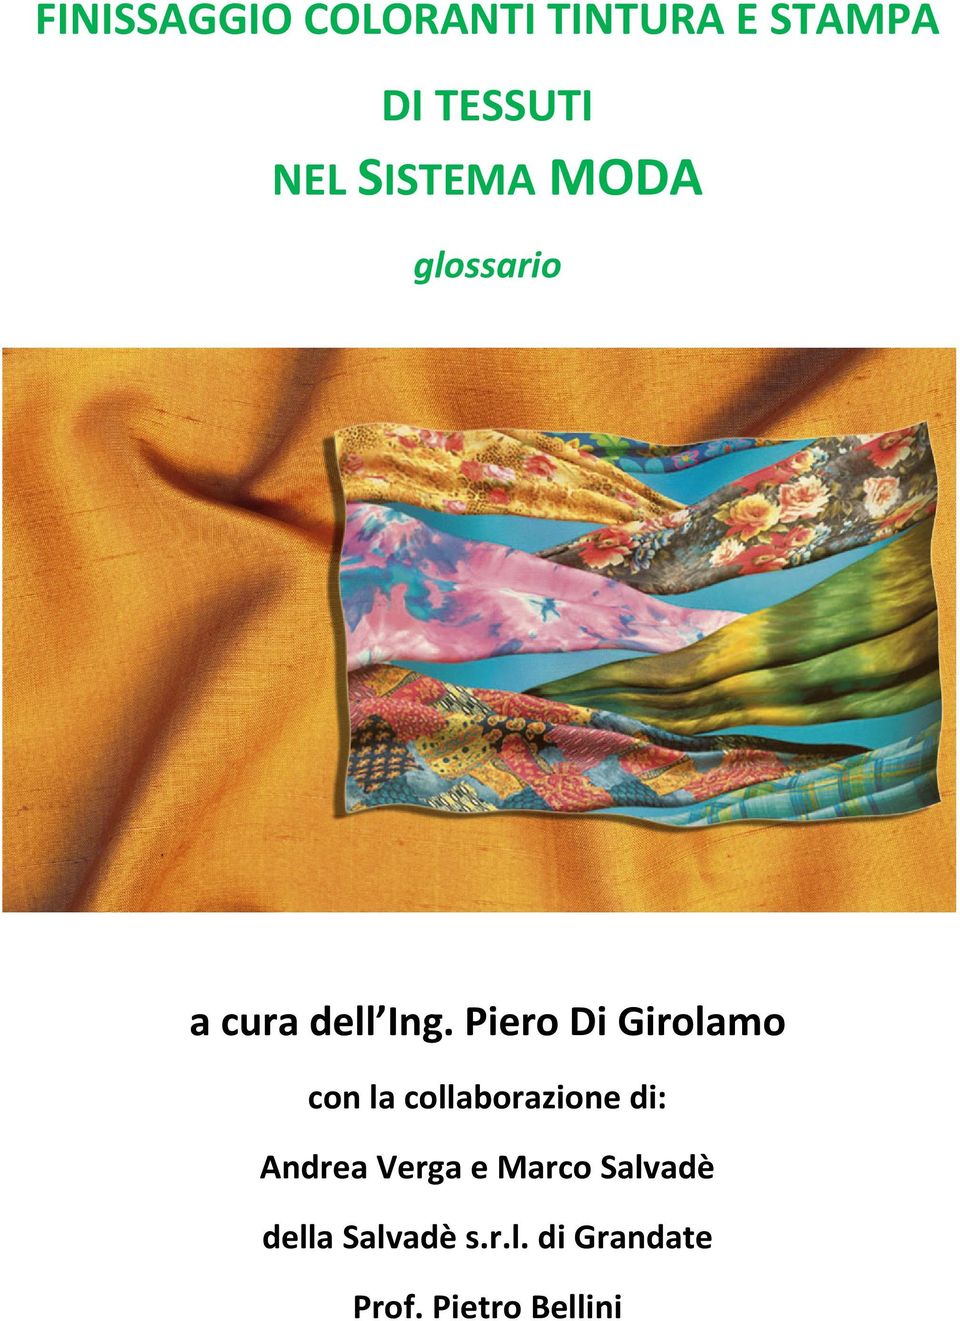 Piero Di Girolamo con la collaborazione di: Andrea